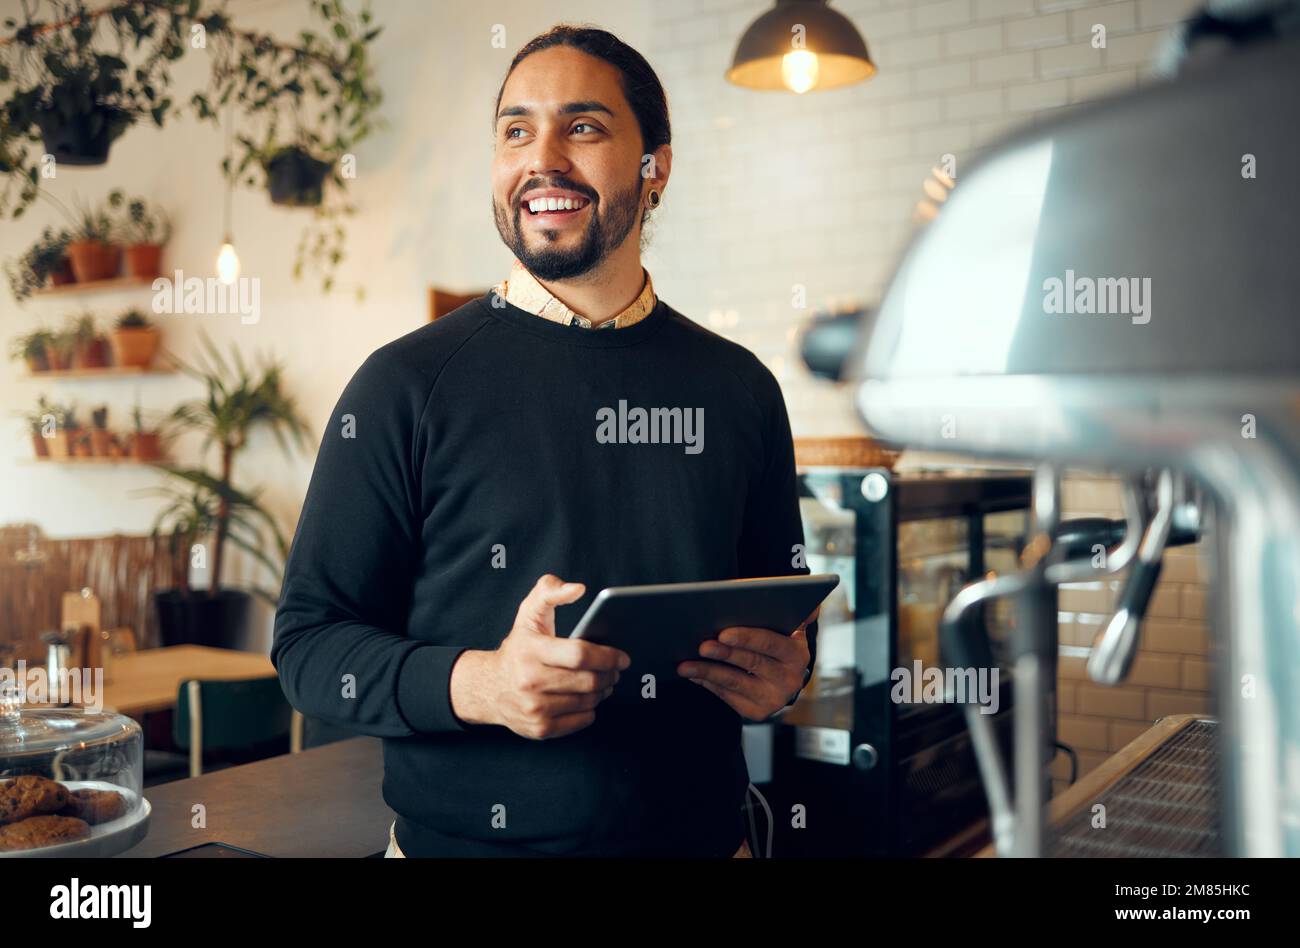 Ritratto, startup cafe manager uomo con tablet per la revisione dei contenuti di social media, networking o ristoranti. Sorriso, motivazione o dipendente del bar Foto Stock